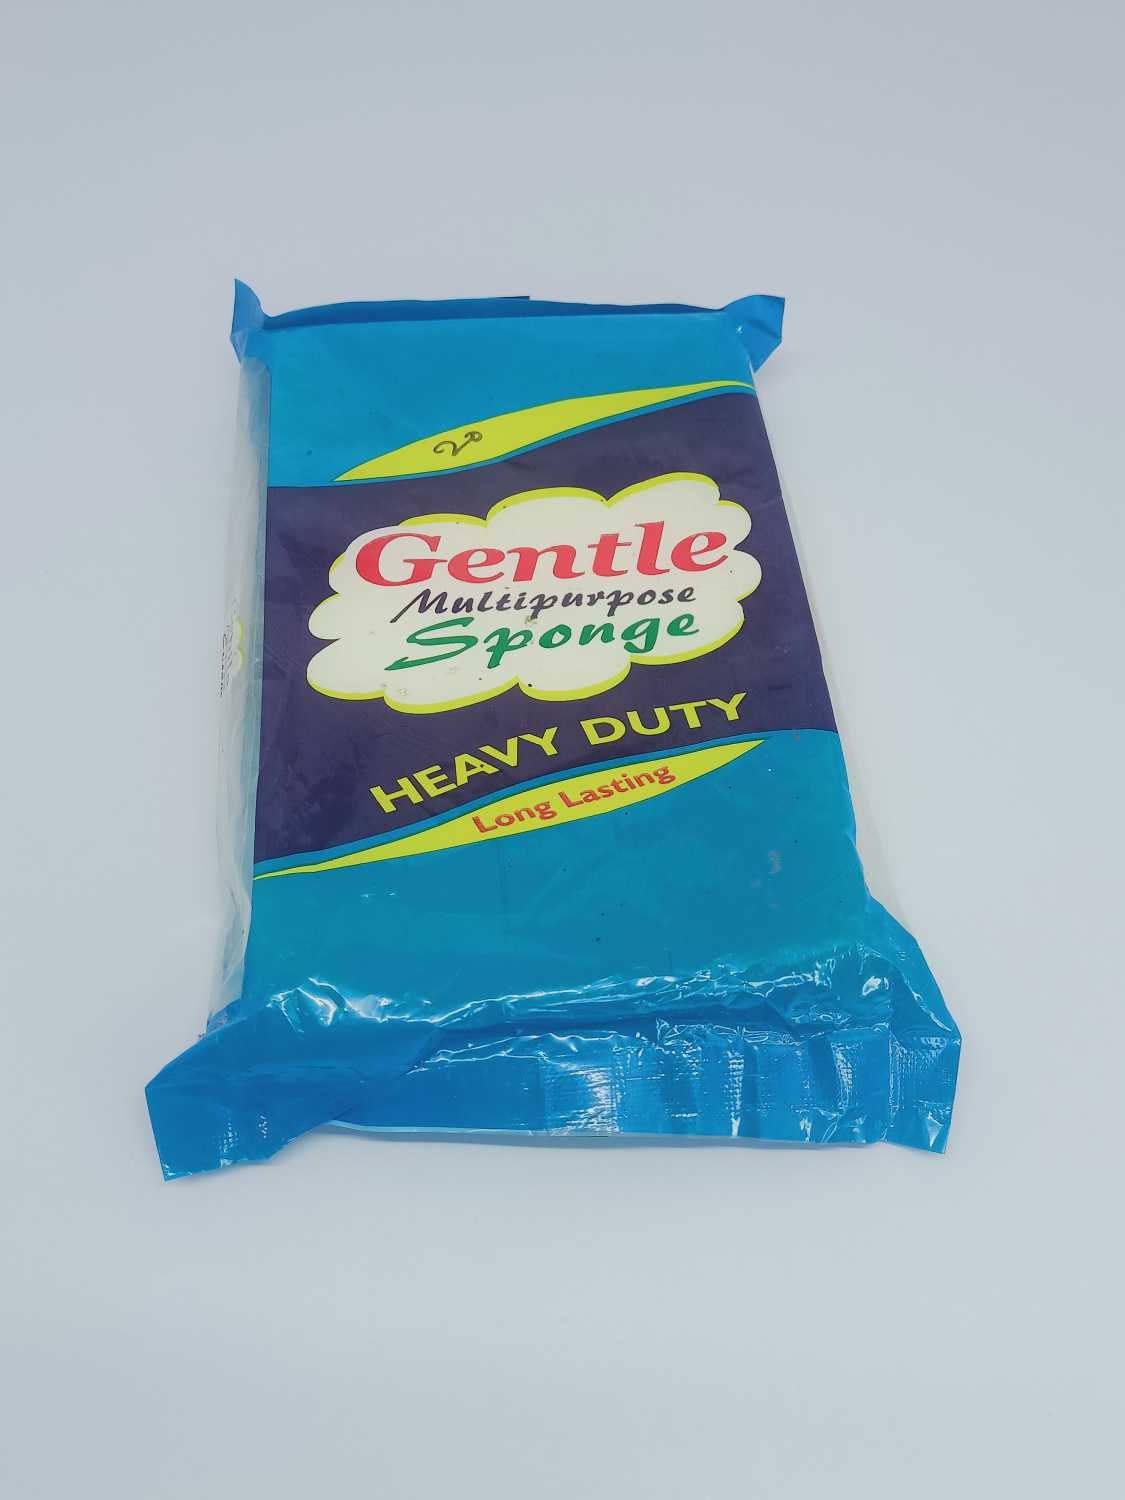 Gentle Multipurpose Sponge Heavy Duty Long Lasting, 1N